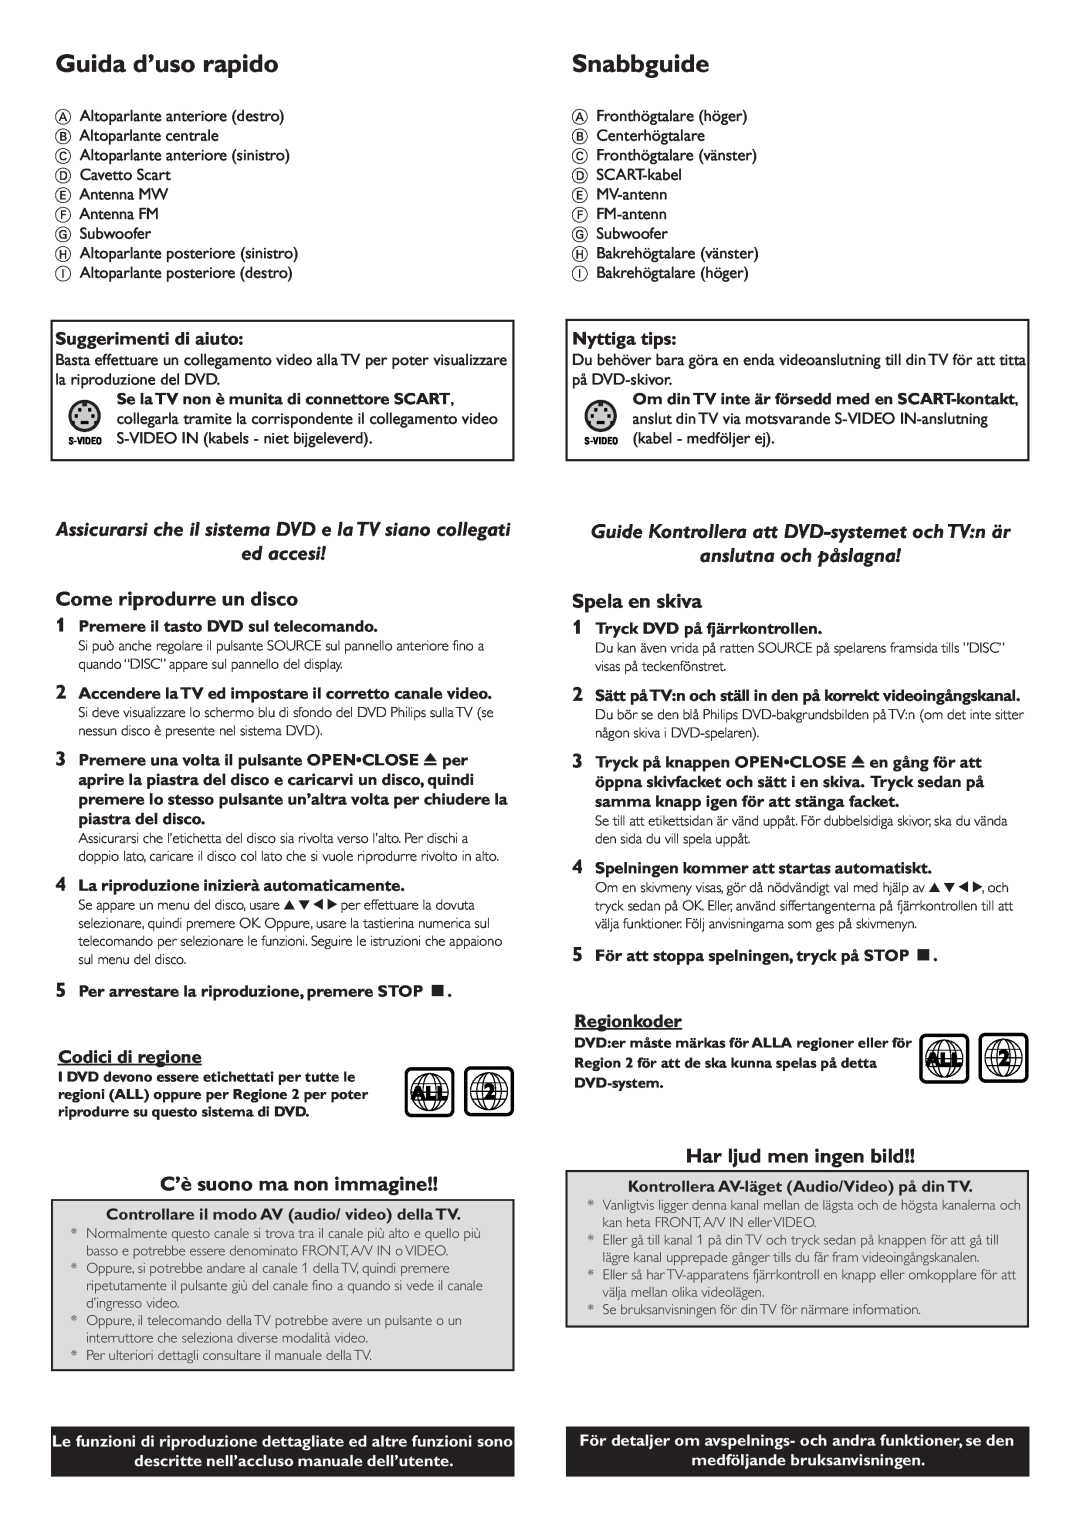 Philips LX3600D/22 manual Guida d’uso rapido, Snabbguide, ed accesi, Come riprodurre un disco, C’è suono ma non immagine 